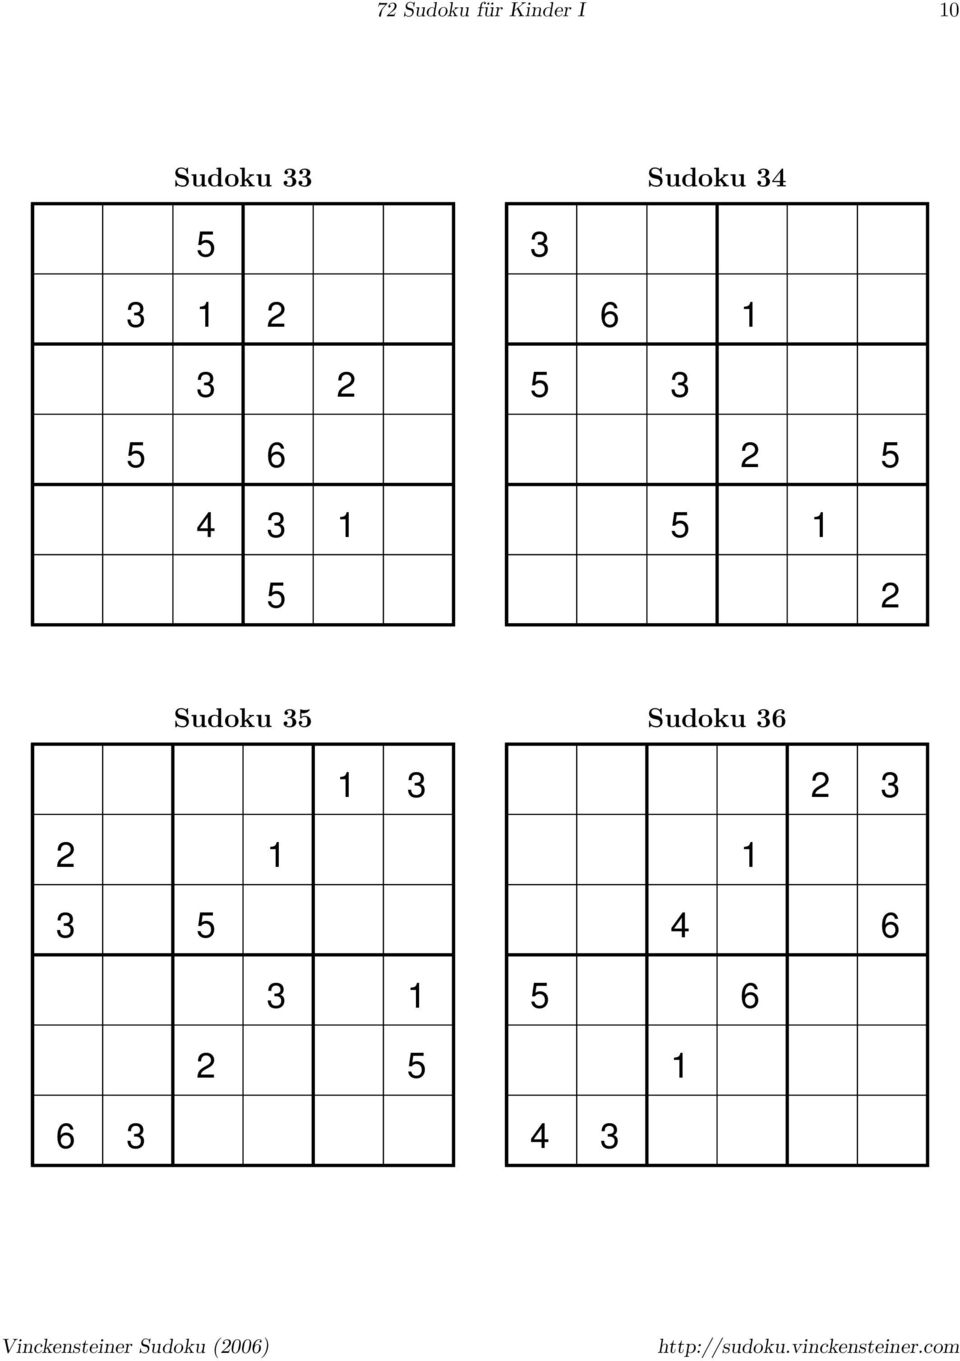 72 Sudokus Für Kinder Und Einsteiger - Band I - Pdf Free ganzes Sudoku Für Schulkinder